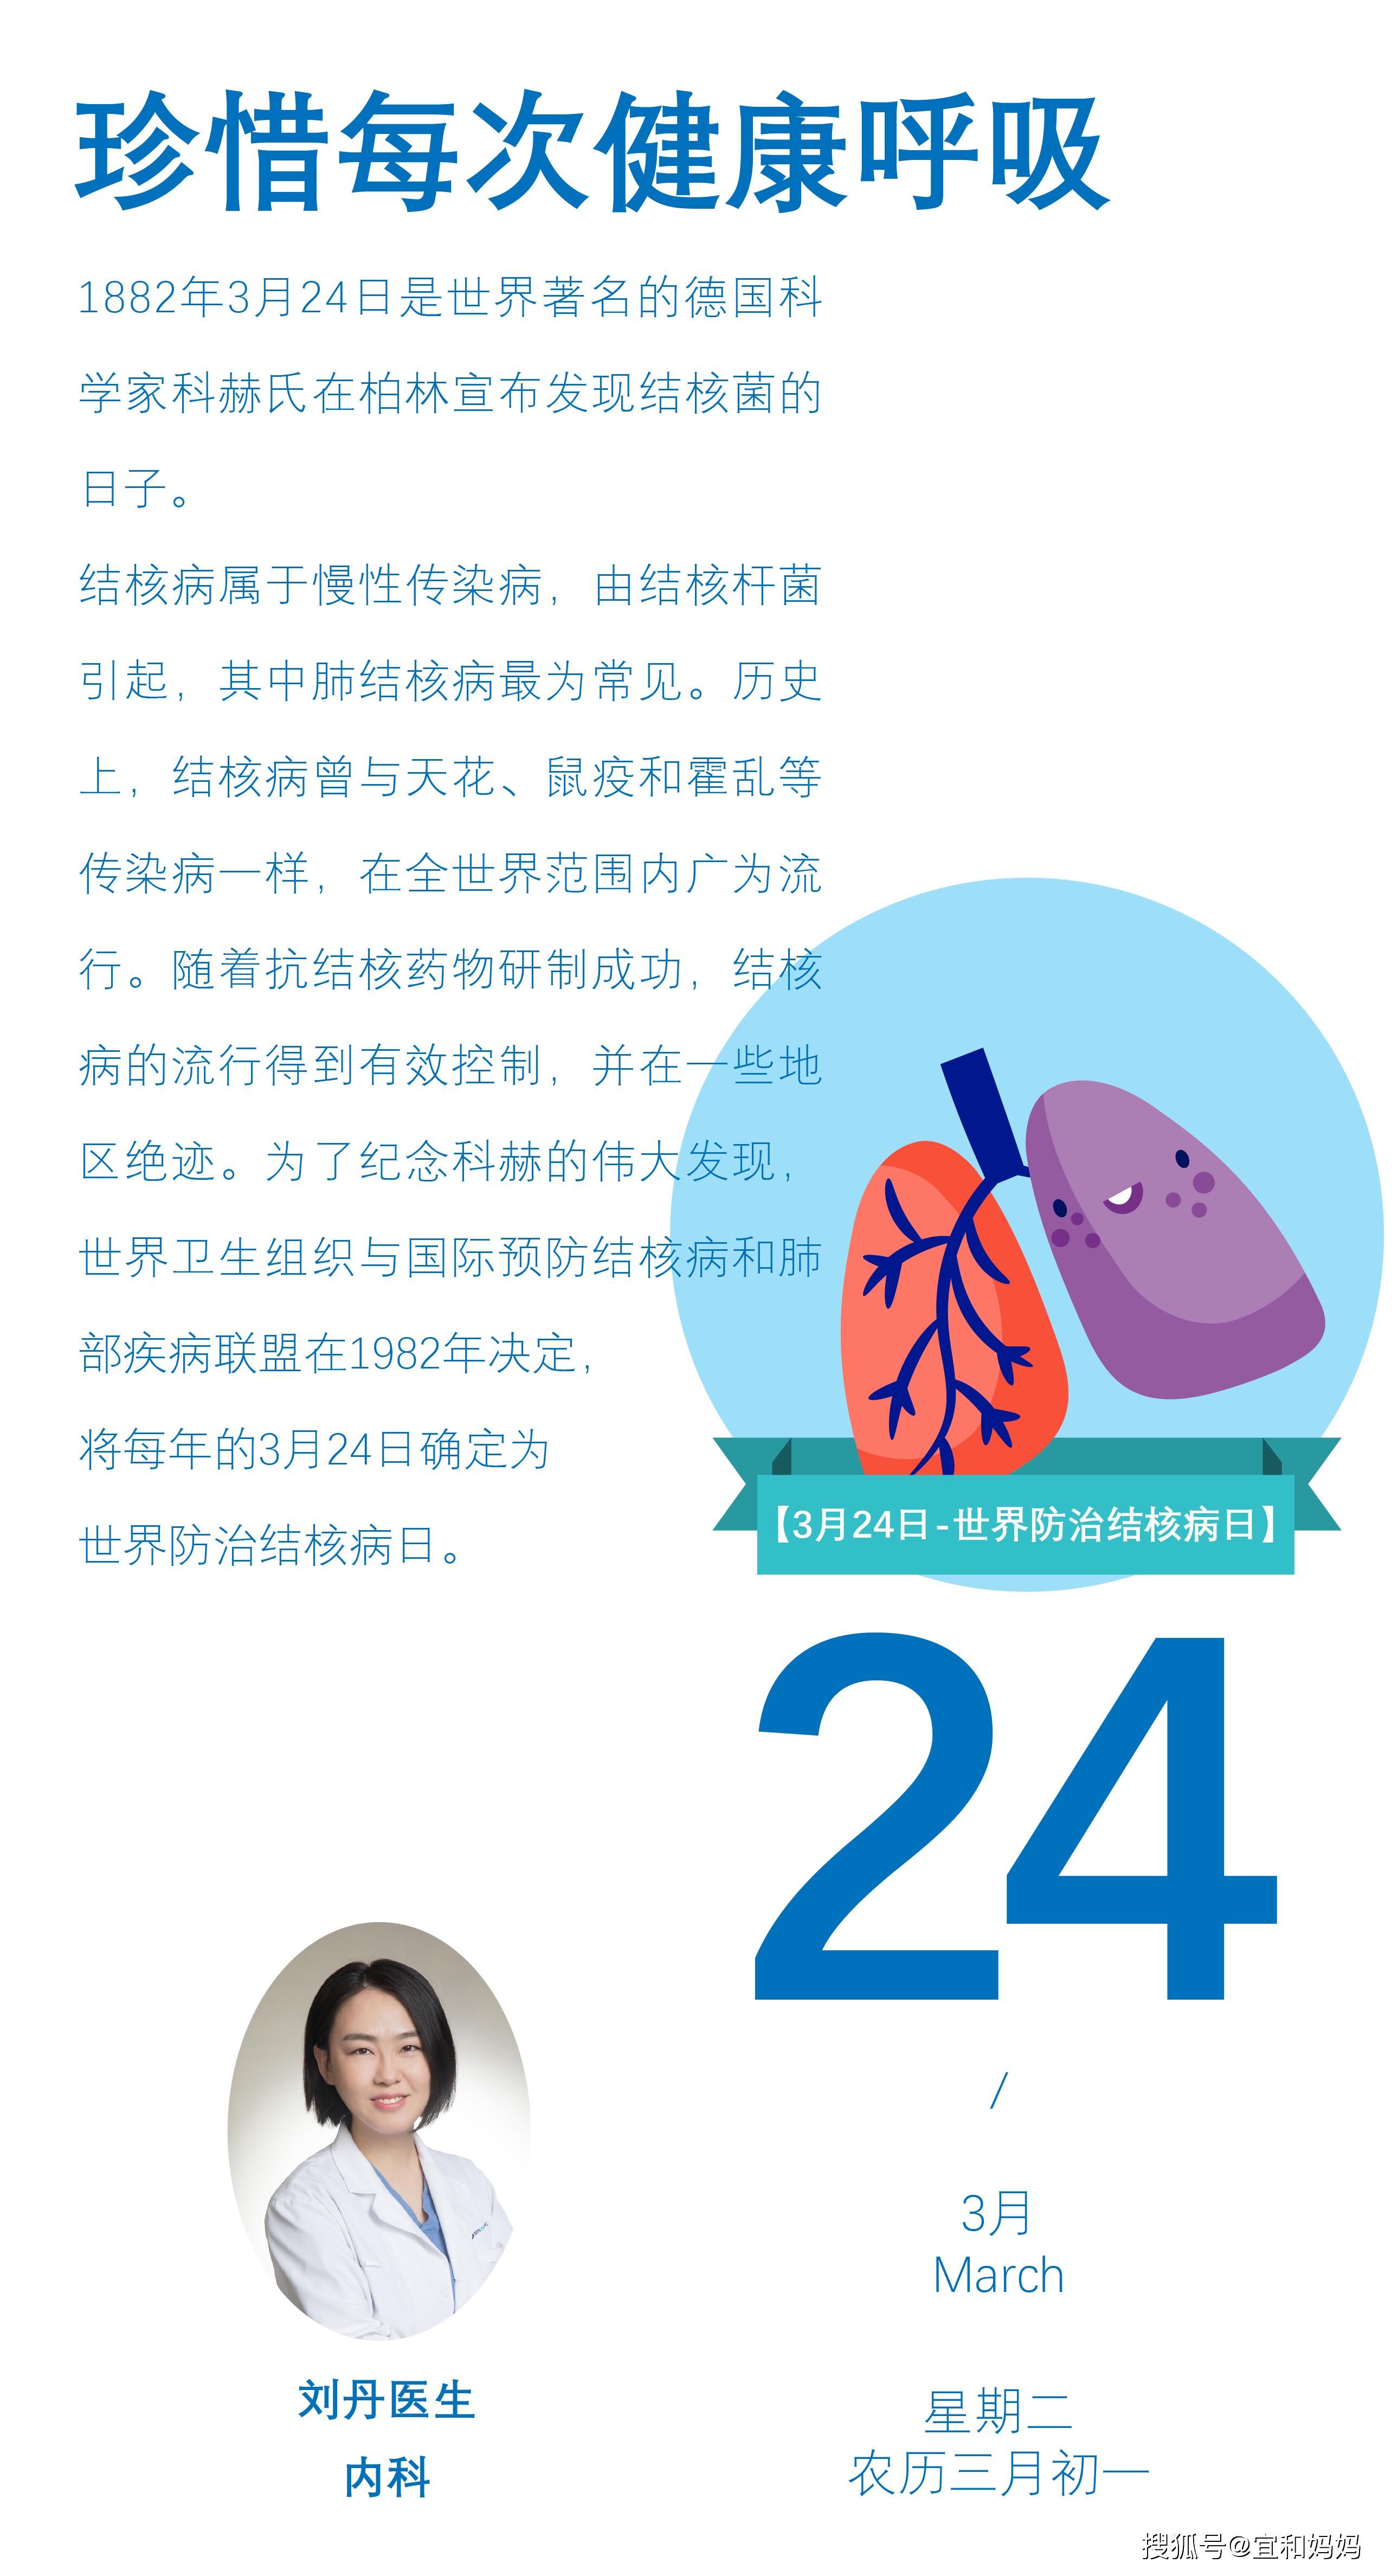 【每日小科普】世界防治结核病日,珍惜每次健康呼吸